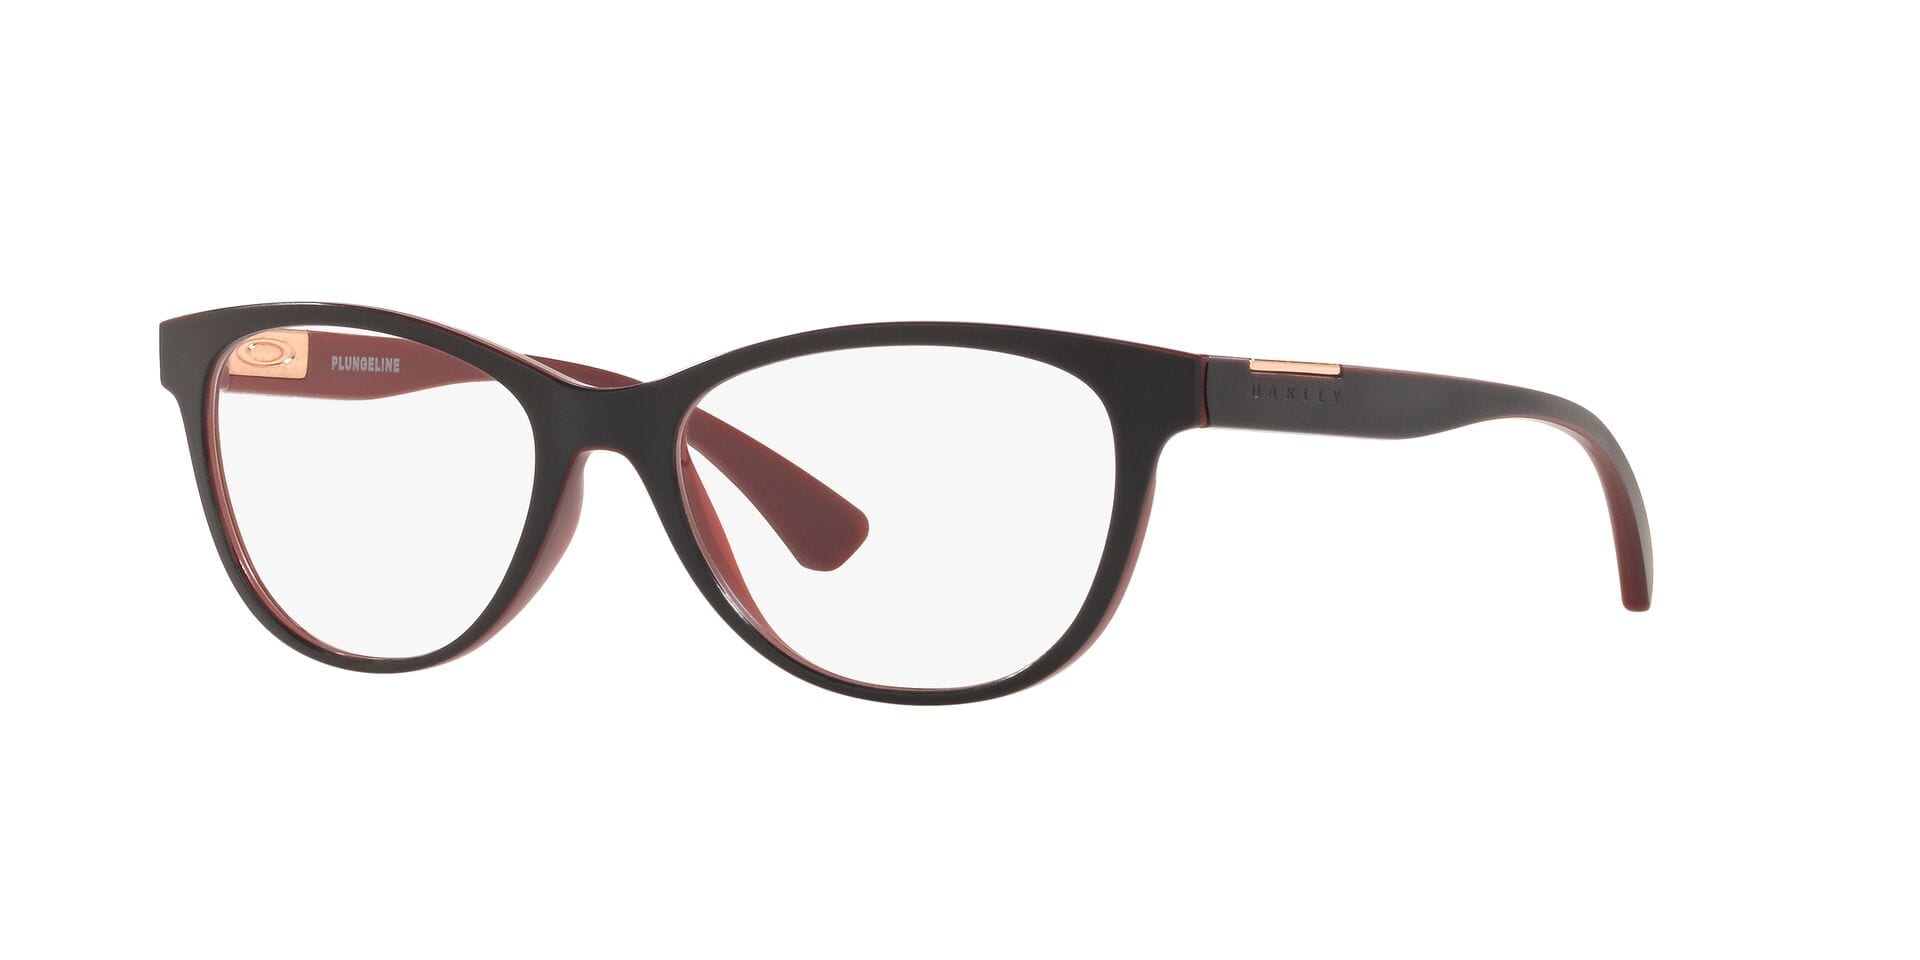 Oakley Plungeline Women's Glasses - ADS 